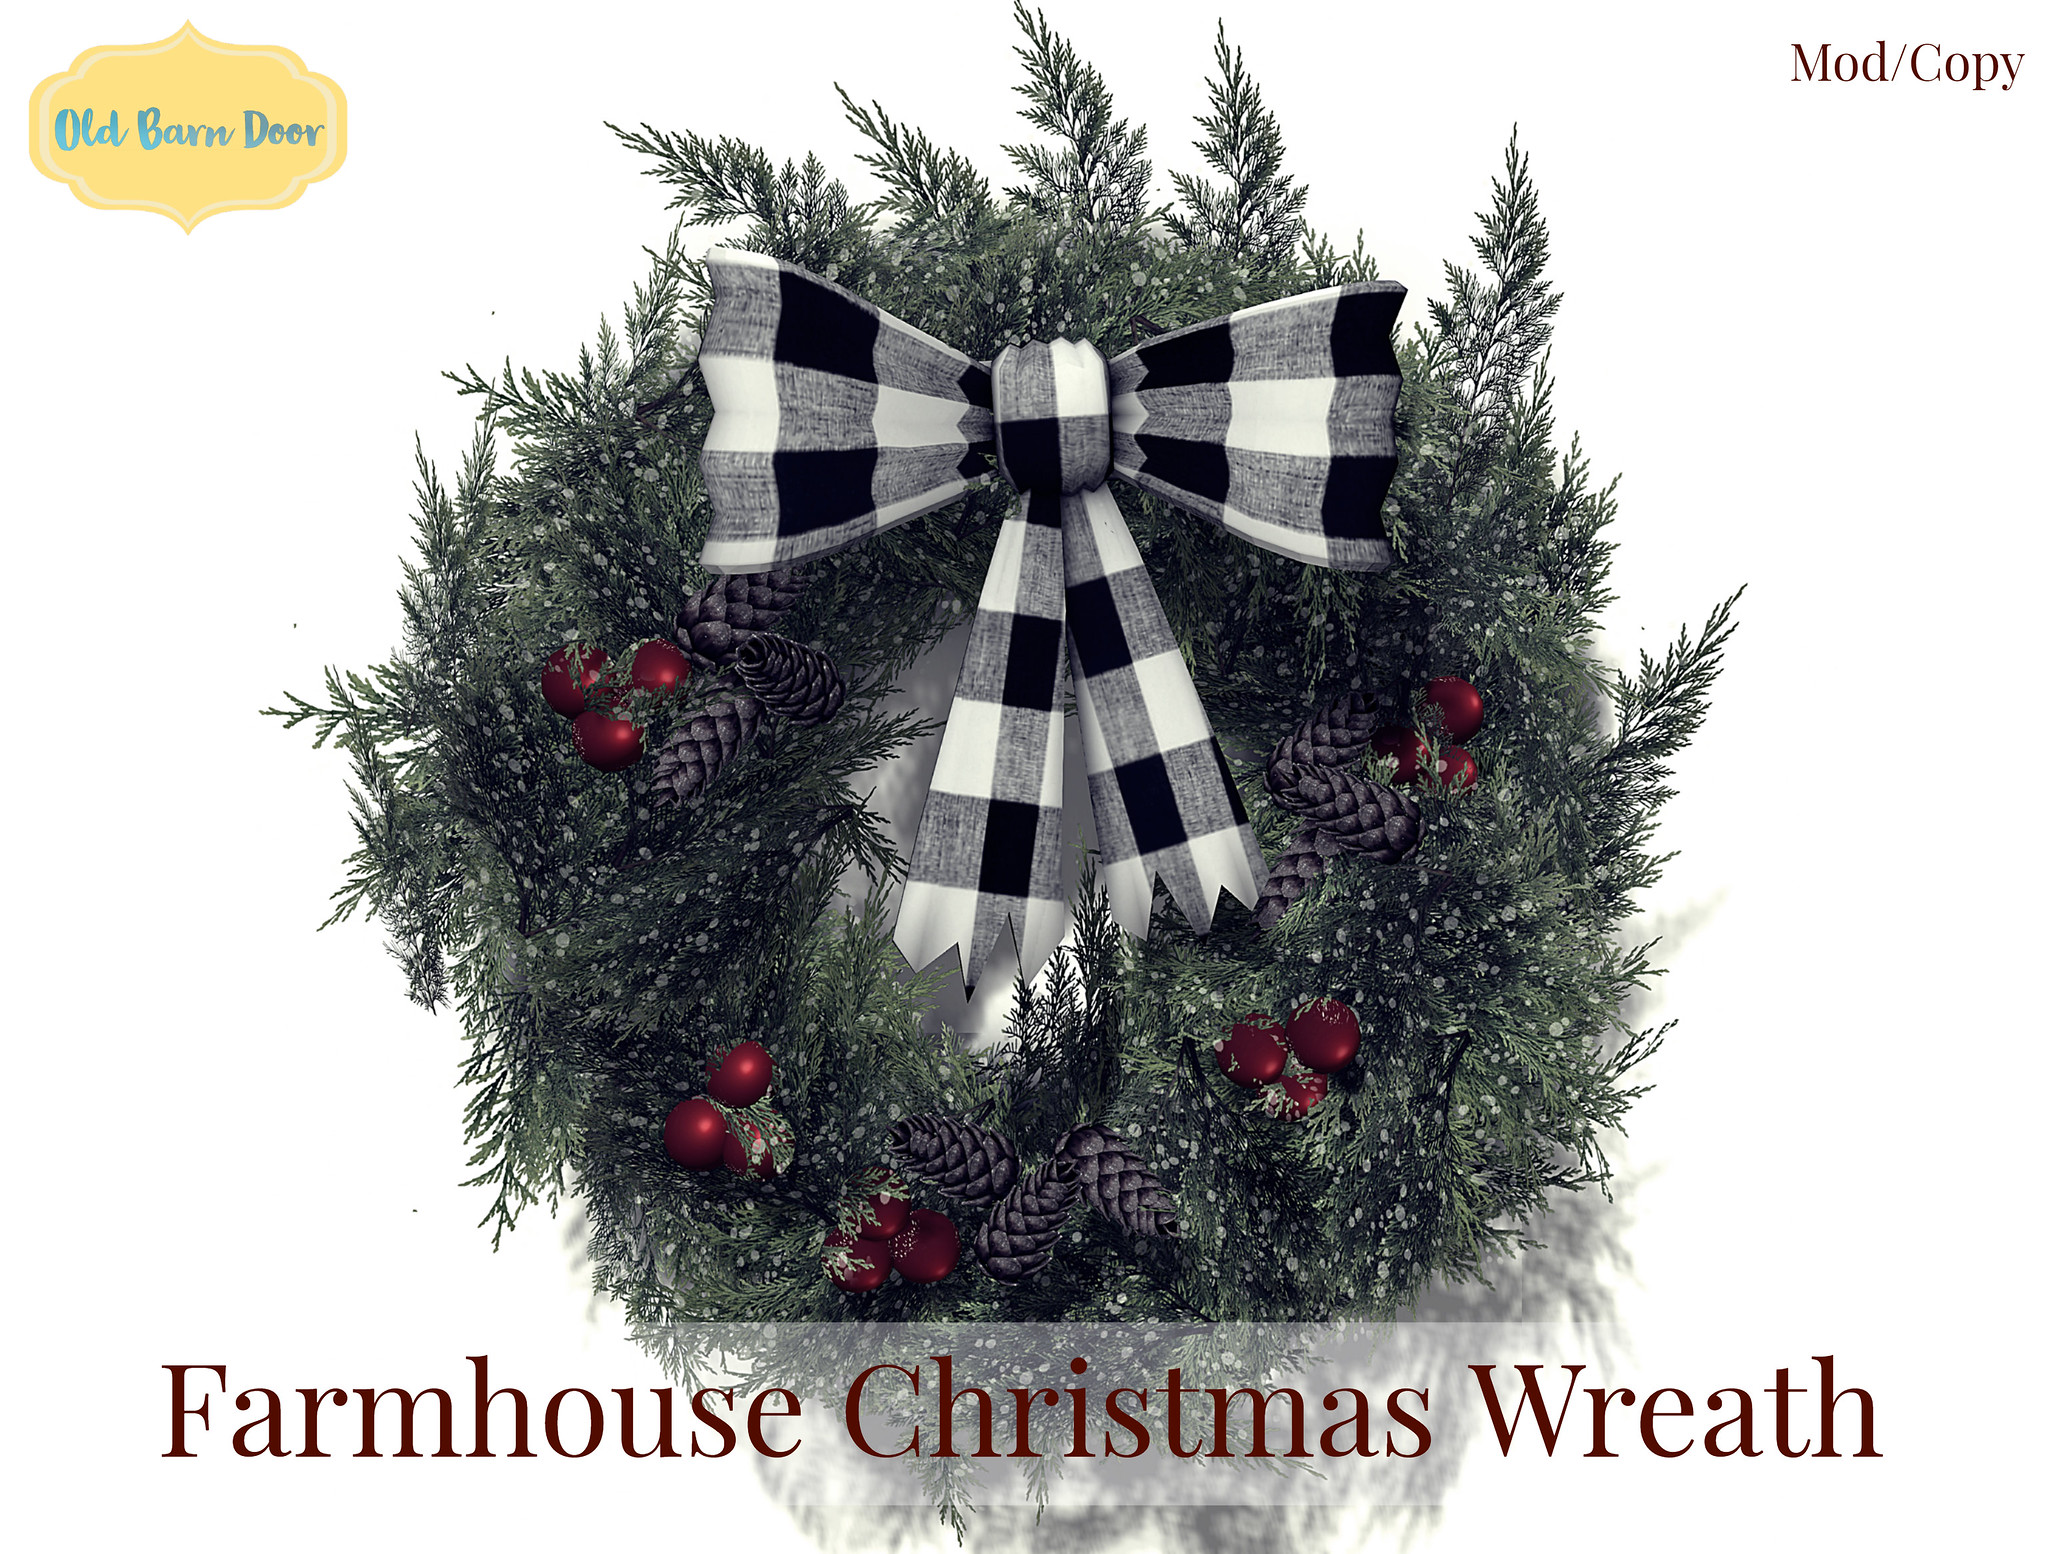 OLD BARN DOOR (OBD) – Farmhouse Christmas Wreath